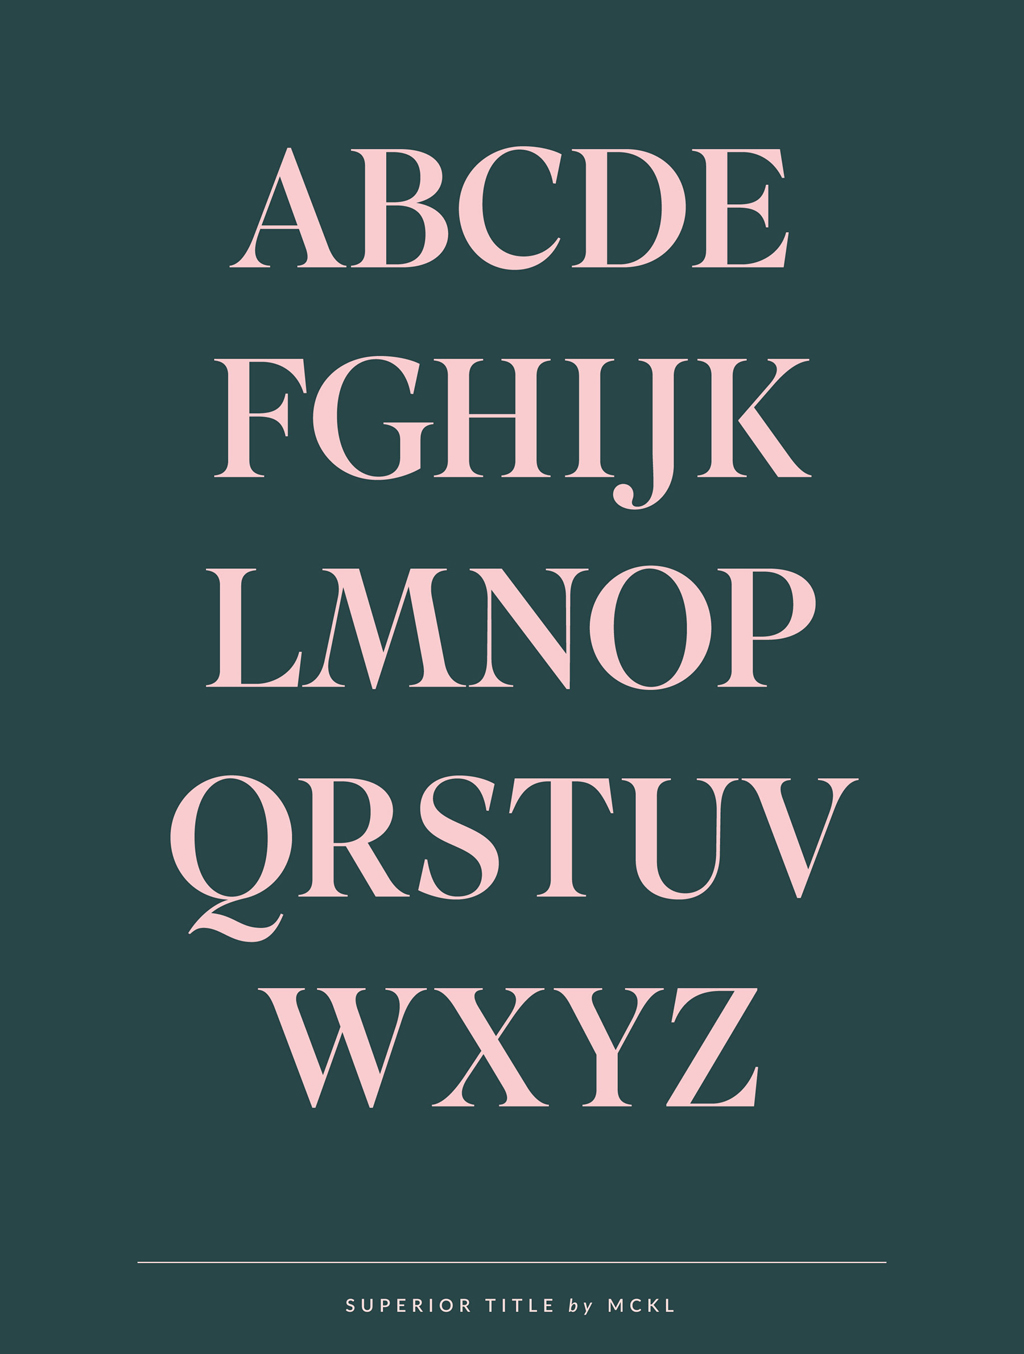 Superior Title by MCKL | Sarah Le Donne Blog – Typefaces